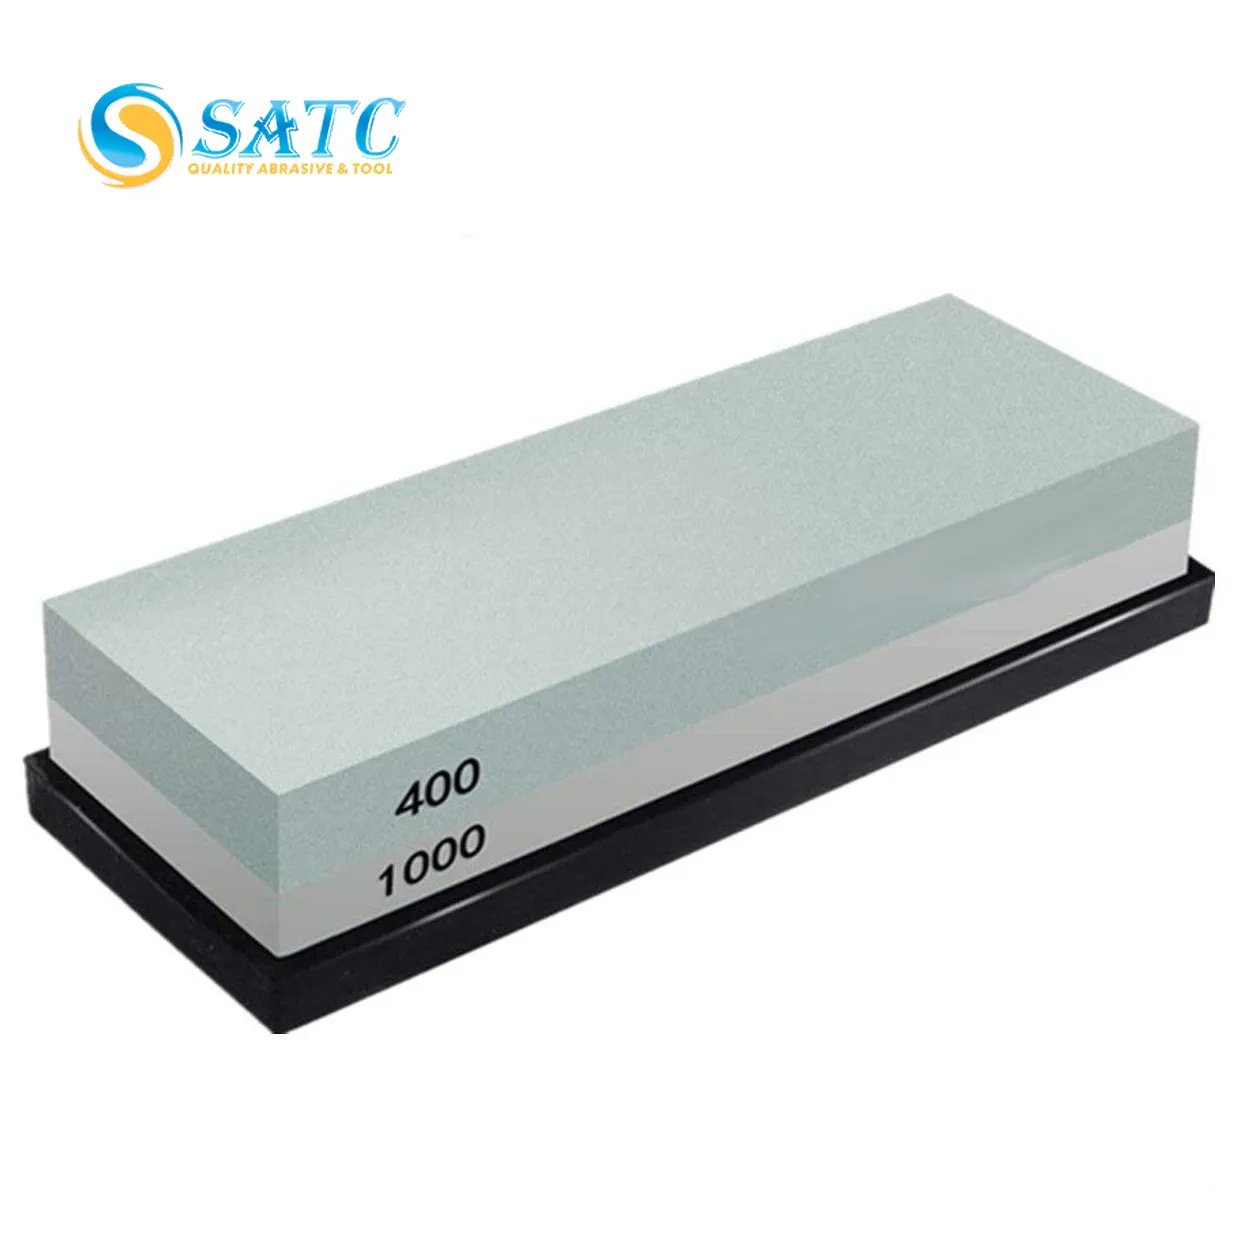 SATC 2 боковых Грит 400/1000 силиконовая основа polishingtool точильный камень для кухни/карманные ножи